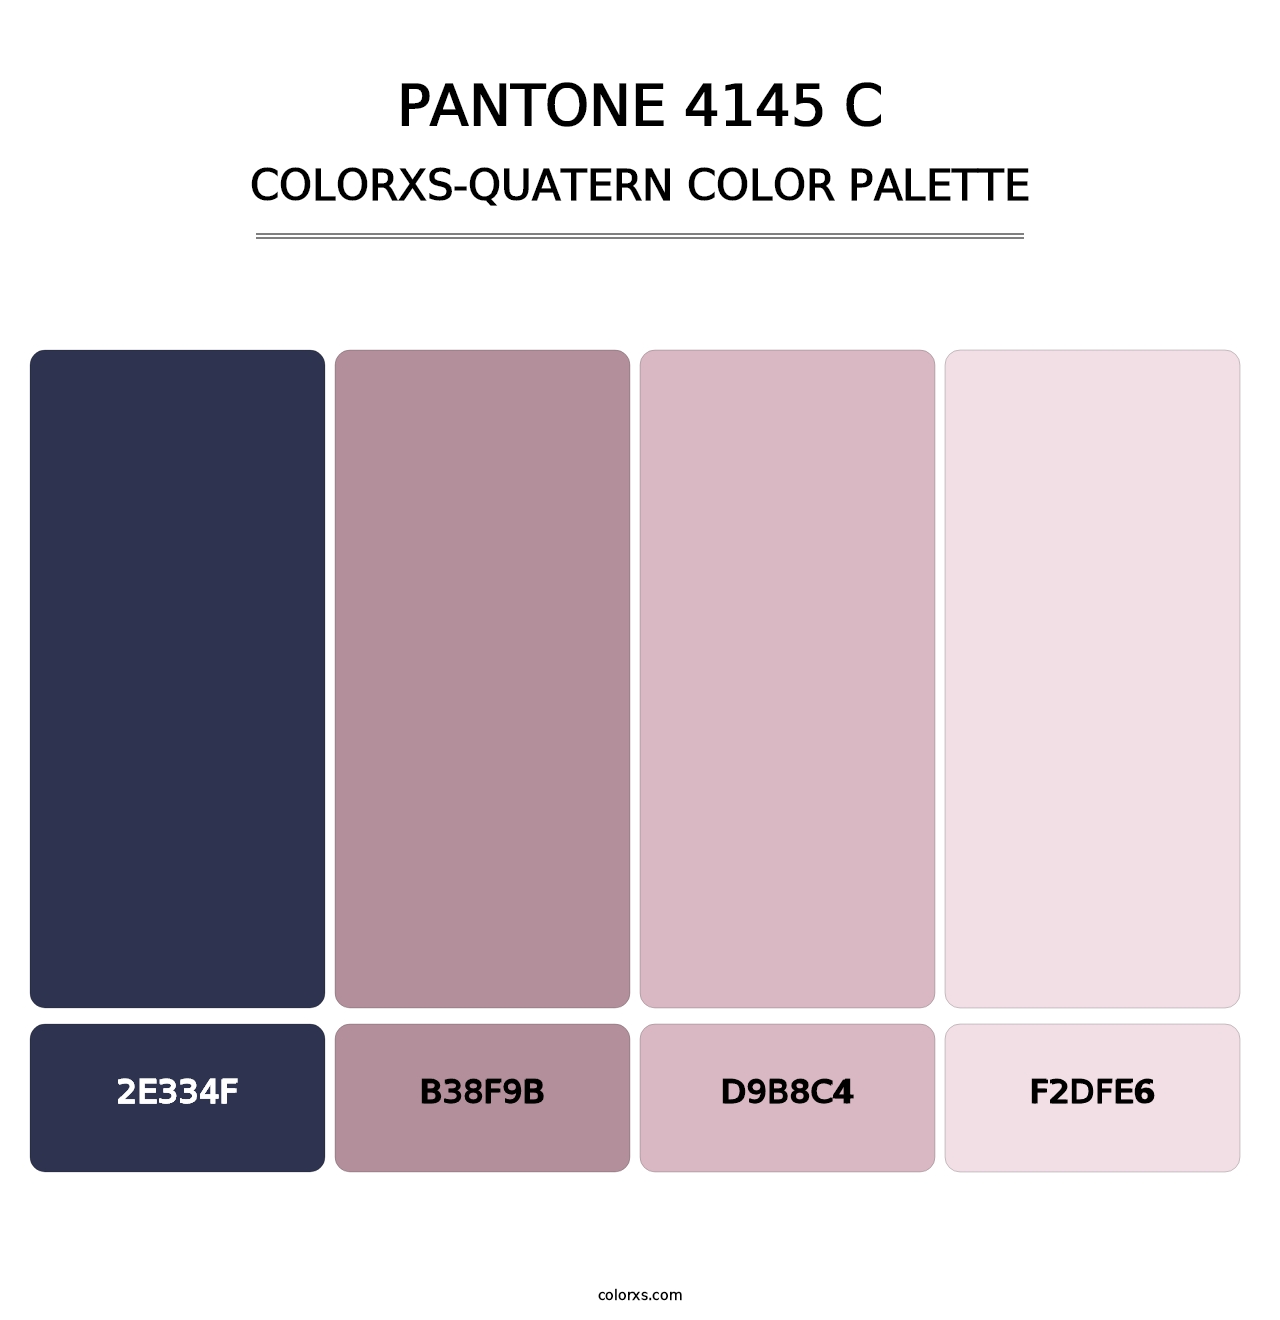 PANTONE 4145 C - Colorxs Quatern Palette